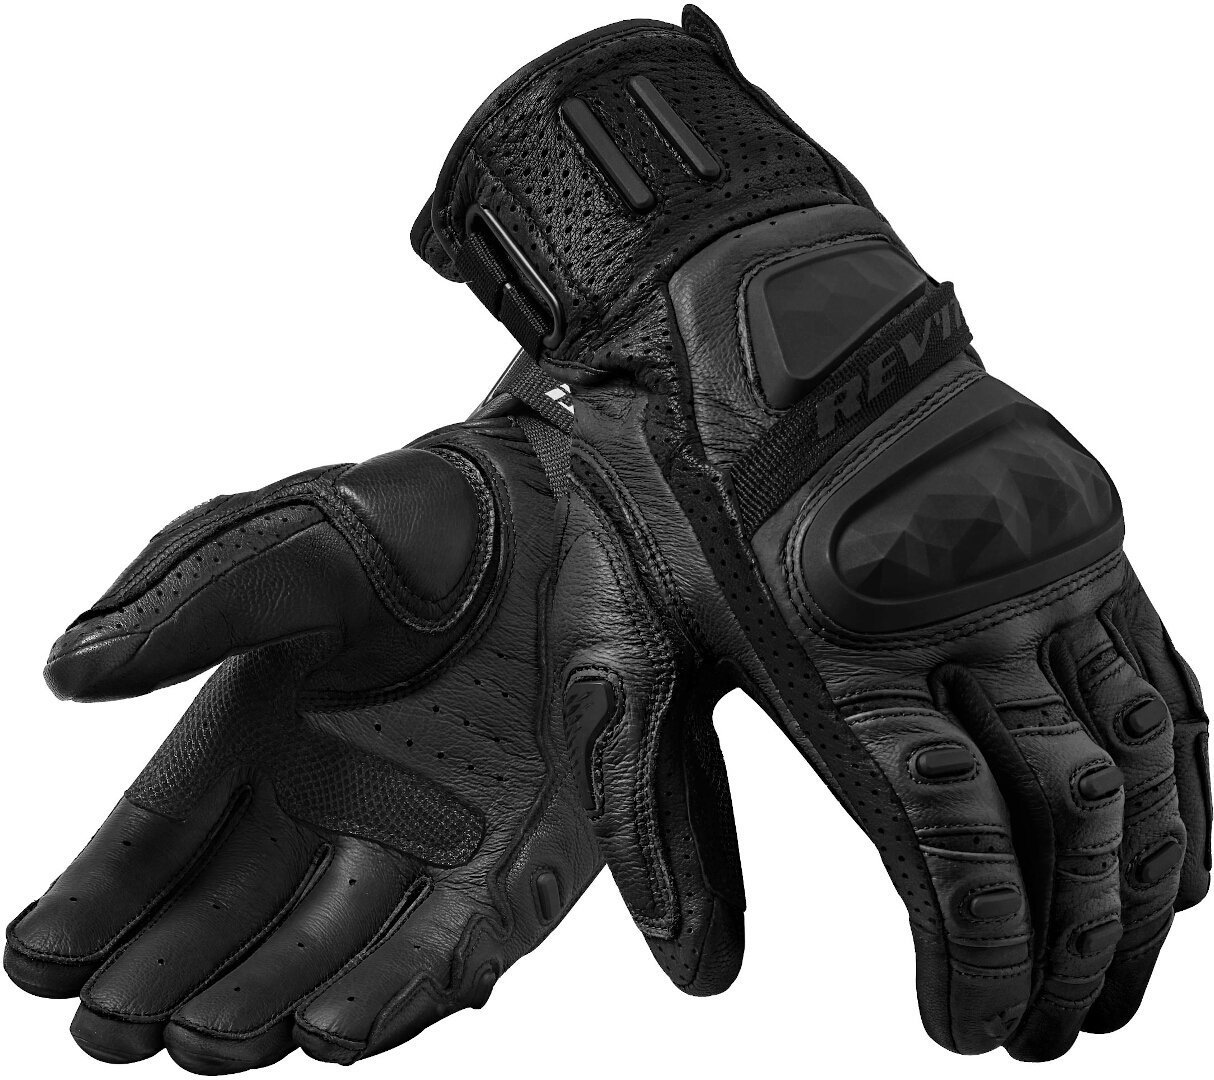 Revit Cayenne 2 Motorrad Handschuhe, schwarz, Größe S, schwarz, Größe S